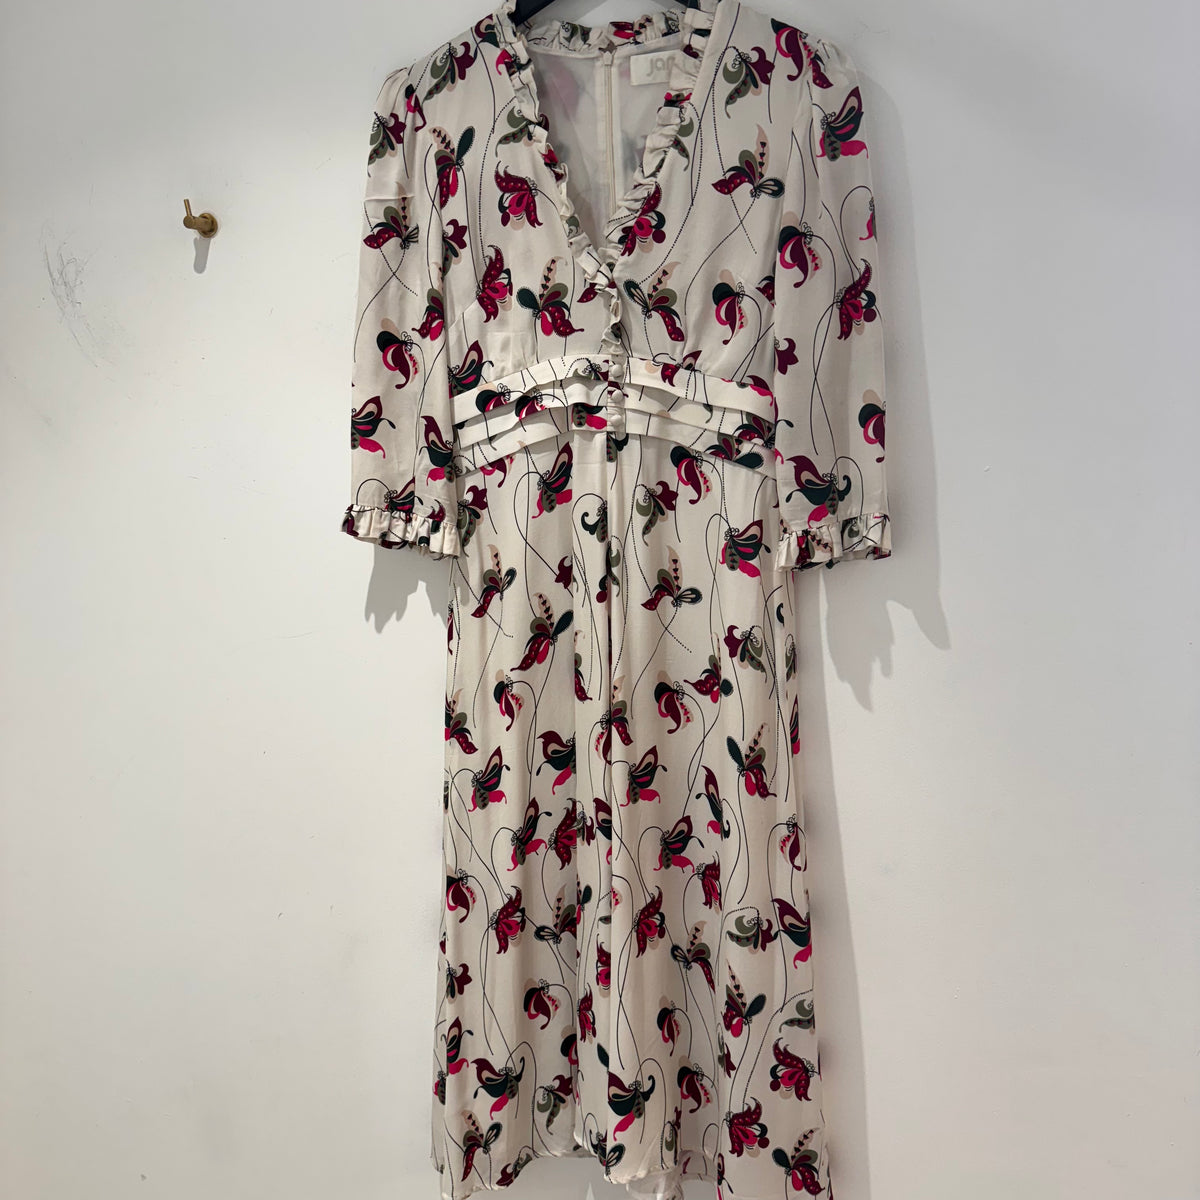 Jane print dress white/pink Size 10